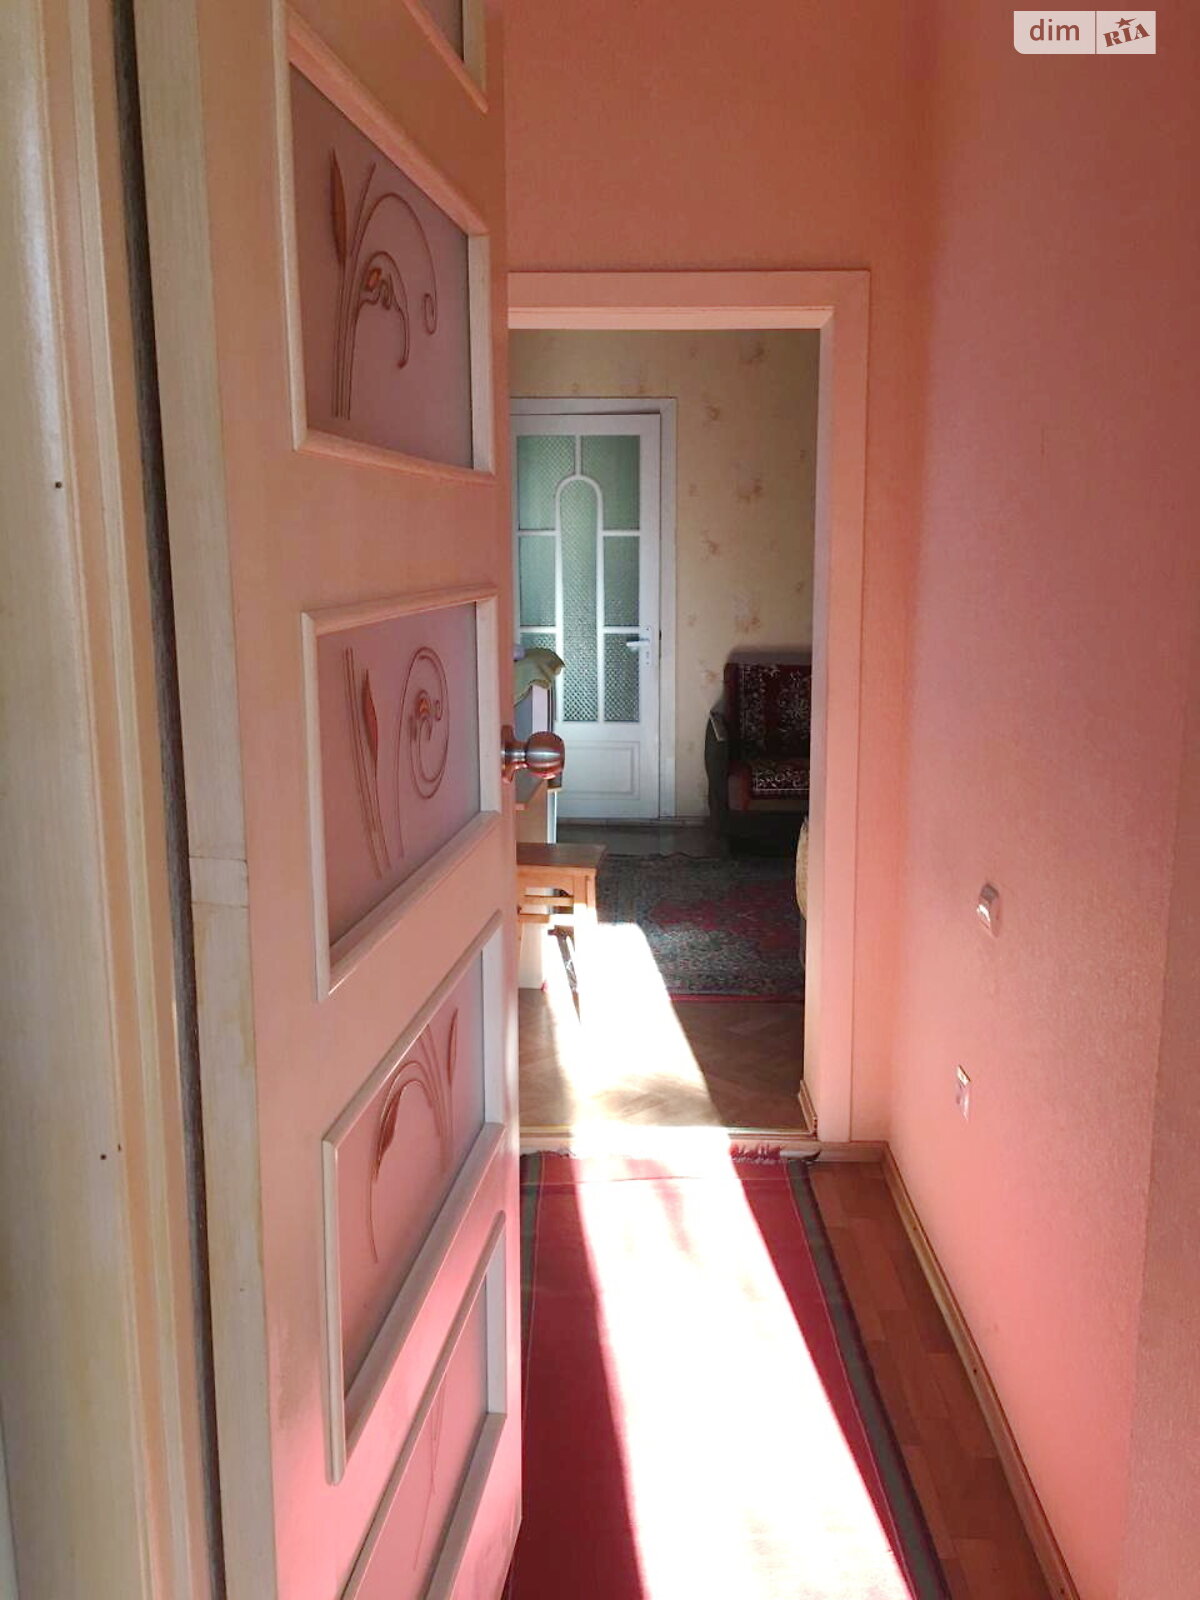 Продажа части дома в Николаеве, район Ракетное Урочище, 3 комнаты фото 1